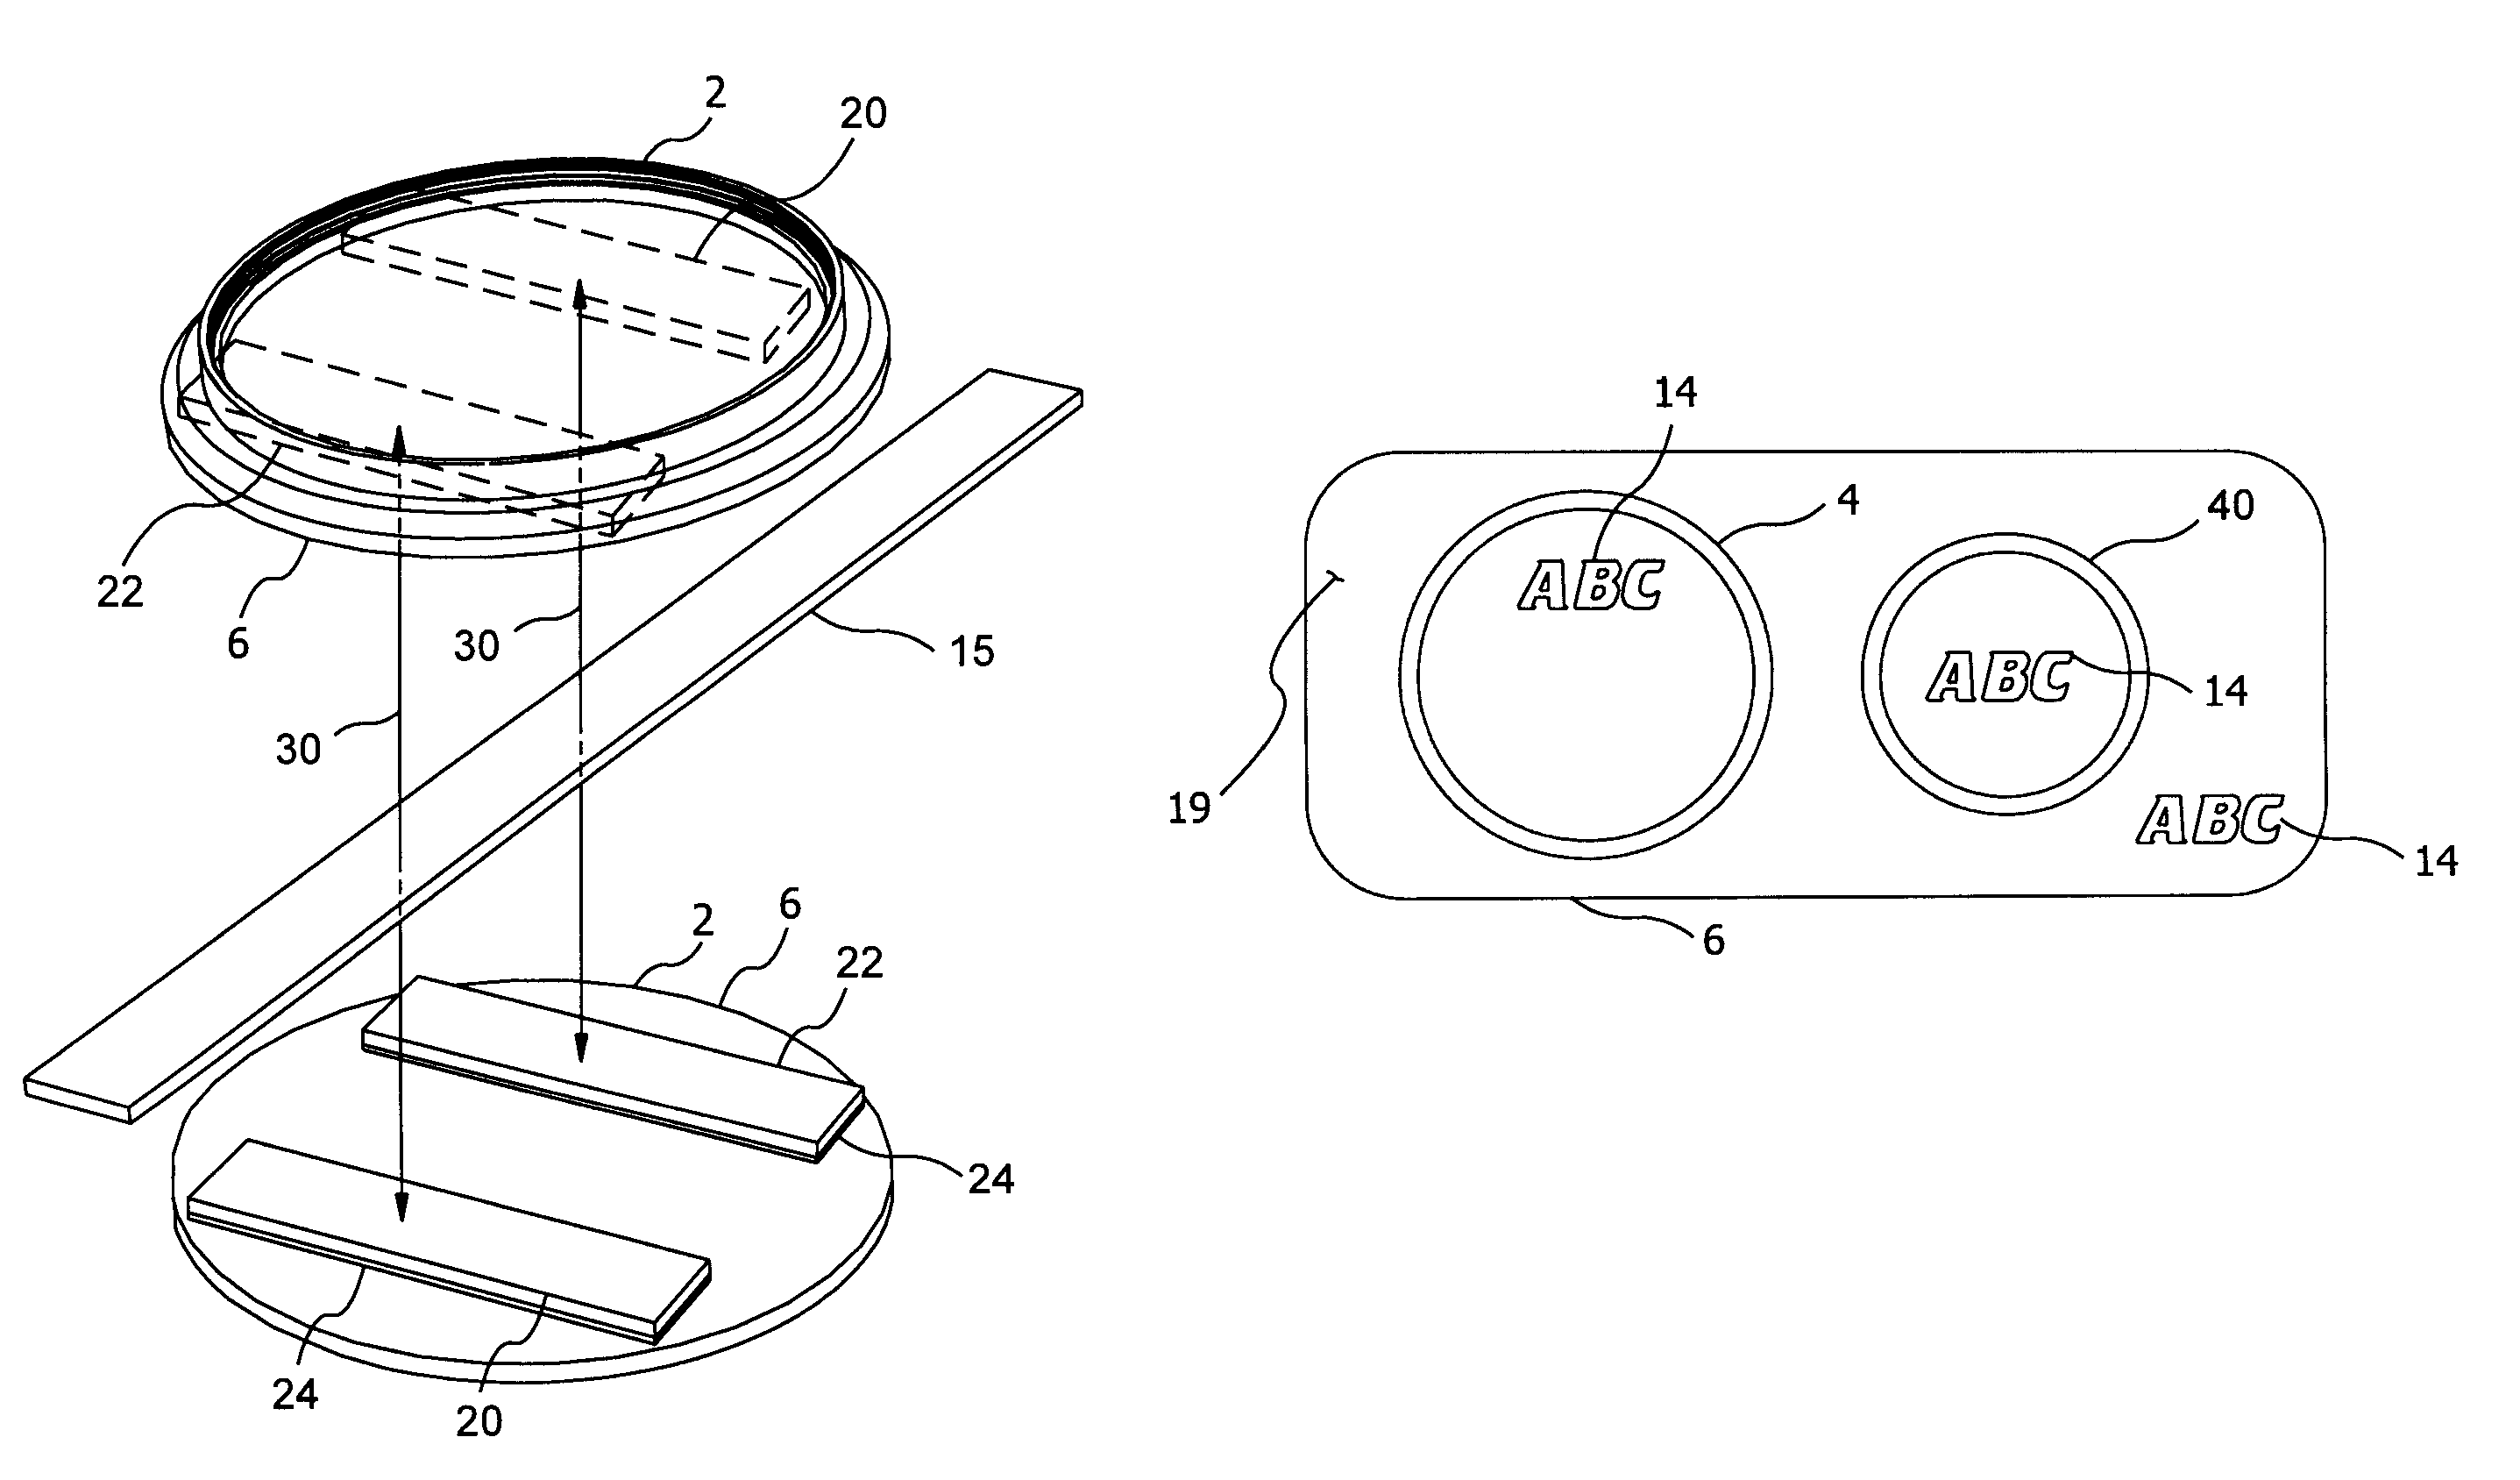 Camera lens accessory holder